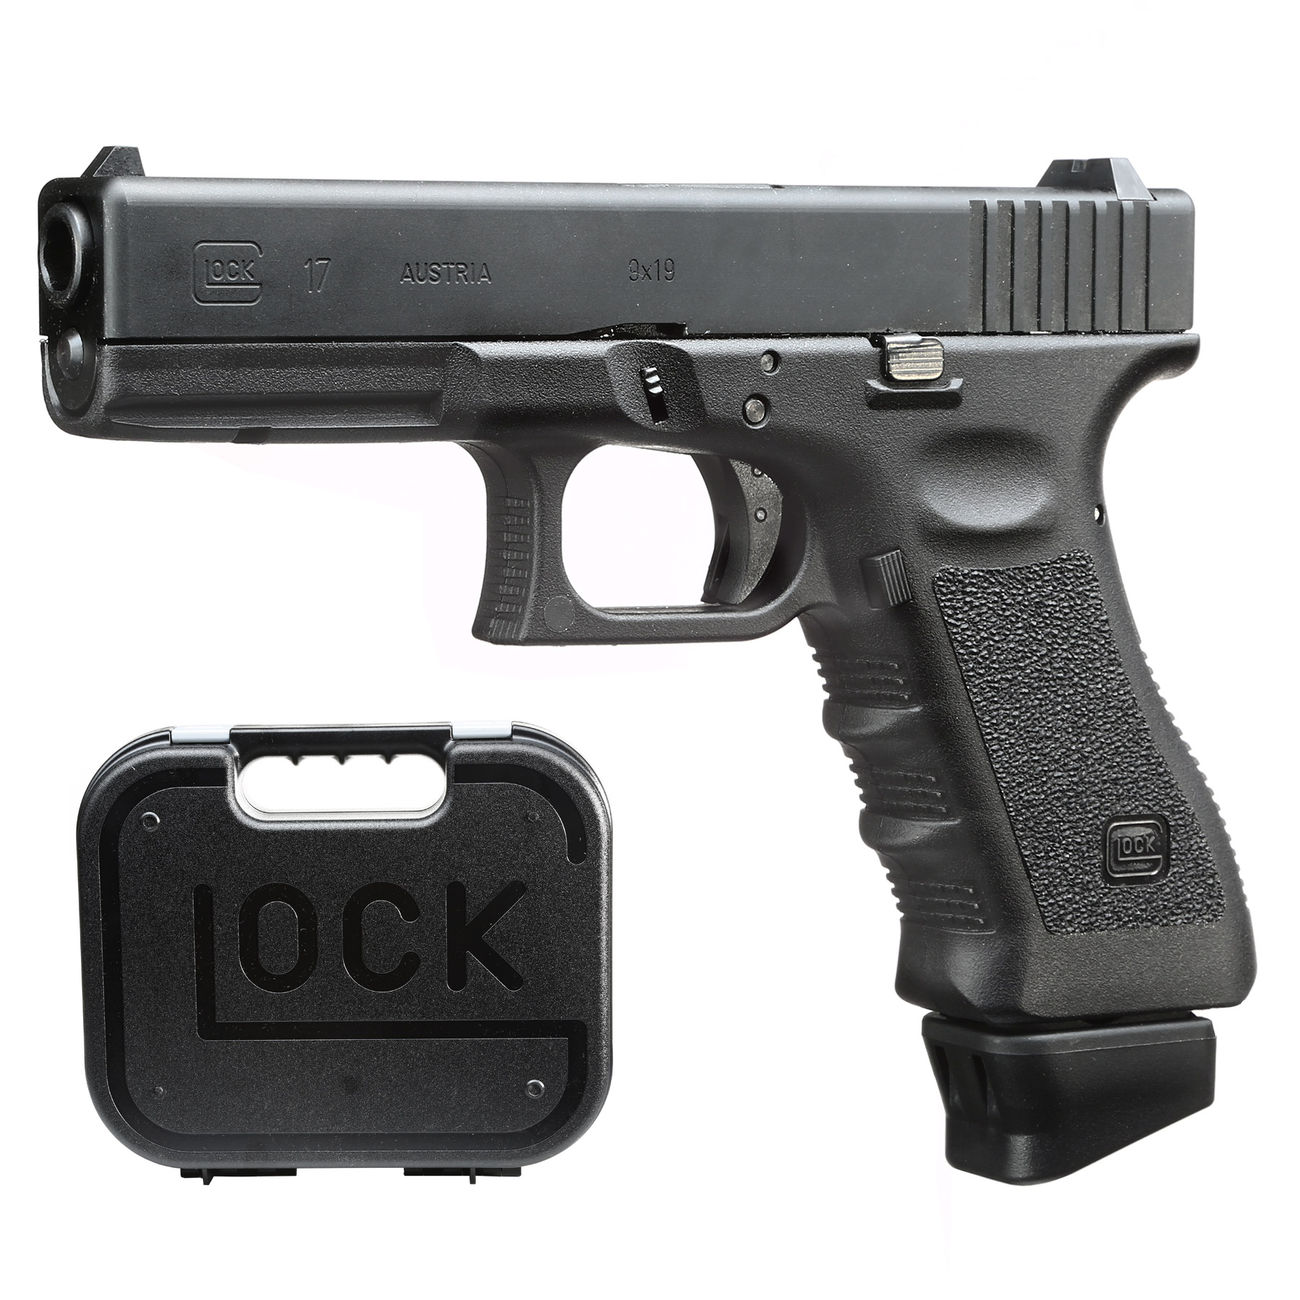 VFC Glock 17 Gen. 3 mit CNC-Metallschlitten CO2BB 6mm BB schwarz - Deluxe-Edition